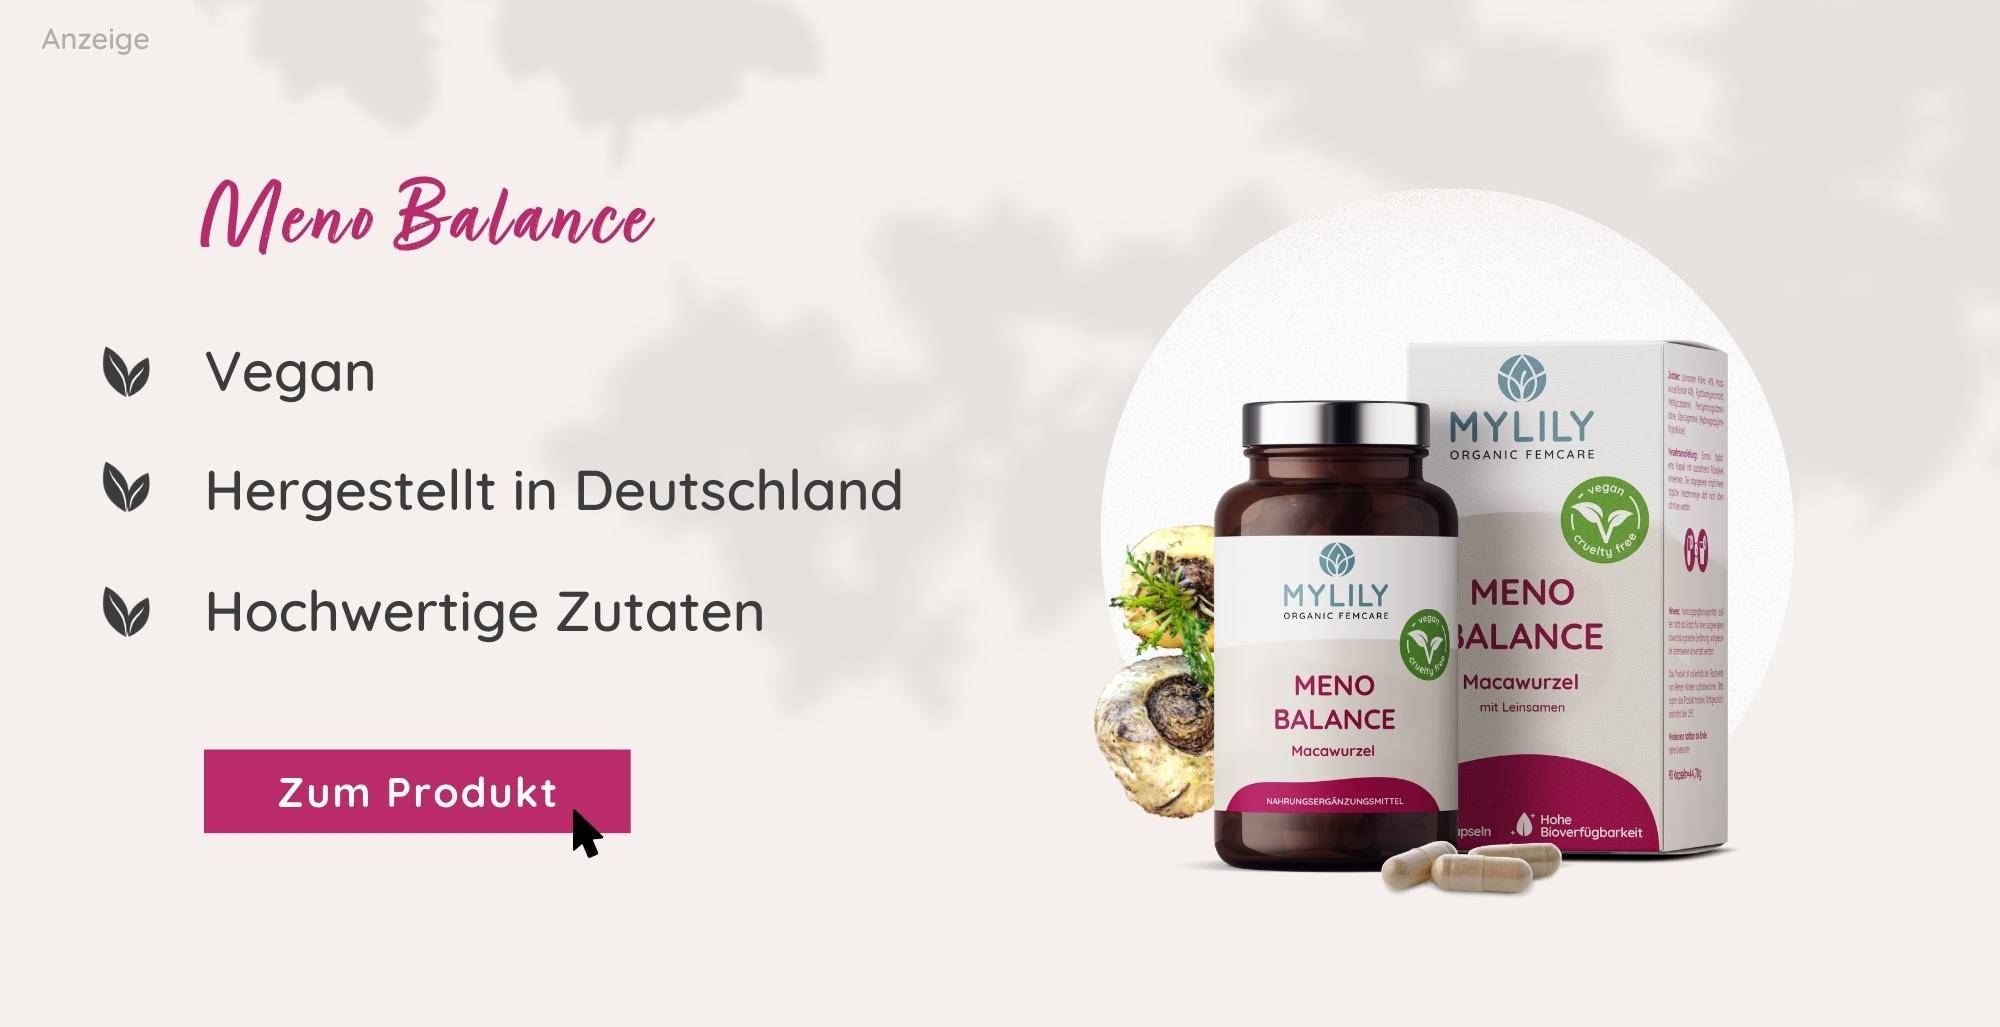 Meno Balance Nahrungsergänzung von MYLILY | mit Macawurzel als Kapsel oder Pulver einnehmbar | hergestellt in Deutschland & vegan 